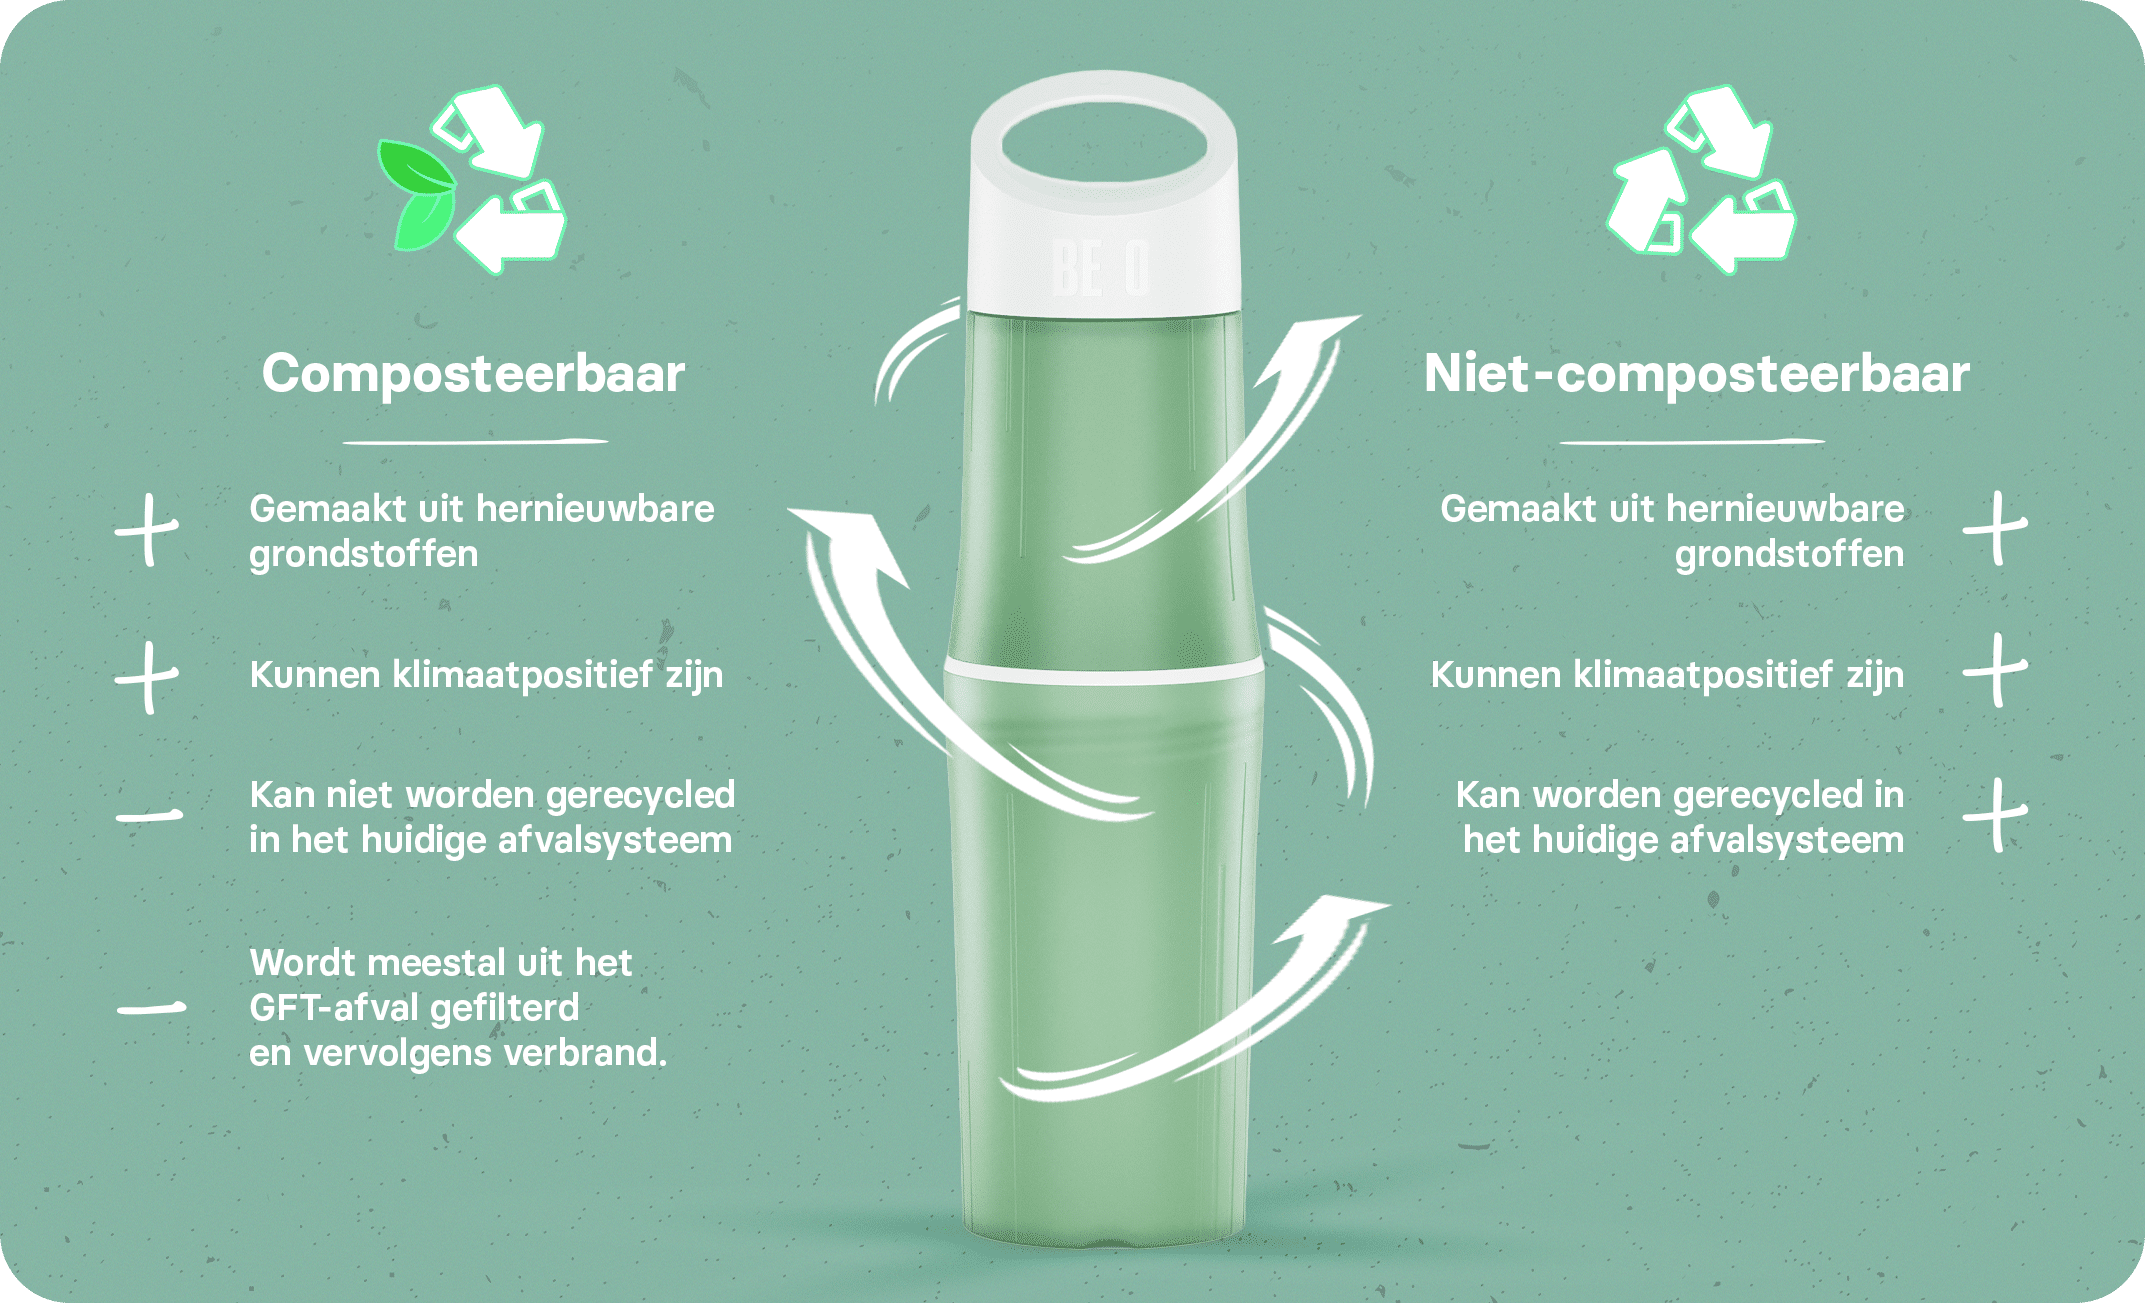 Een infographic met de verschillen tussen composteerbaar en niet-composteerbaar bioplastic